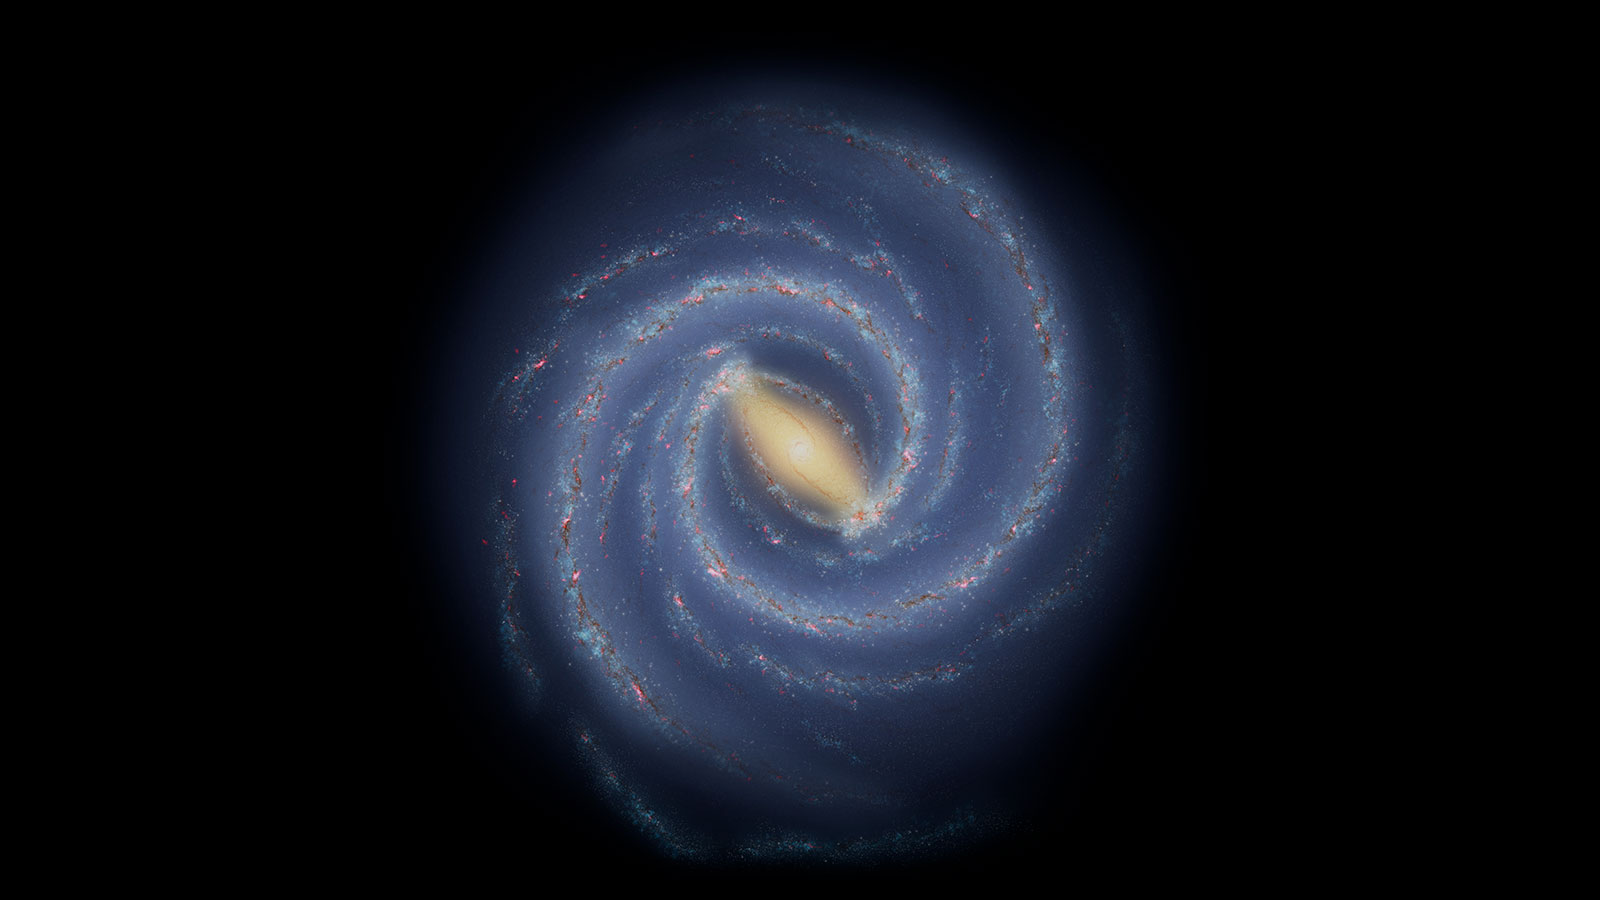 Co Droga Mleczna ukrywa w swoim centrum? Astronomowie wykonali rekordowo szczegółowe pomiary